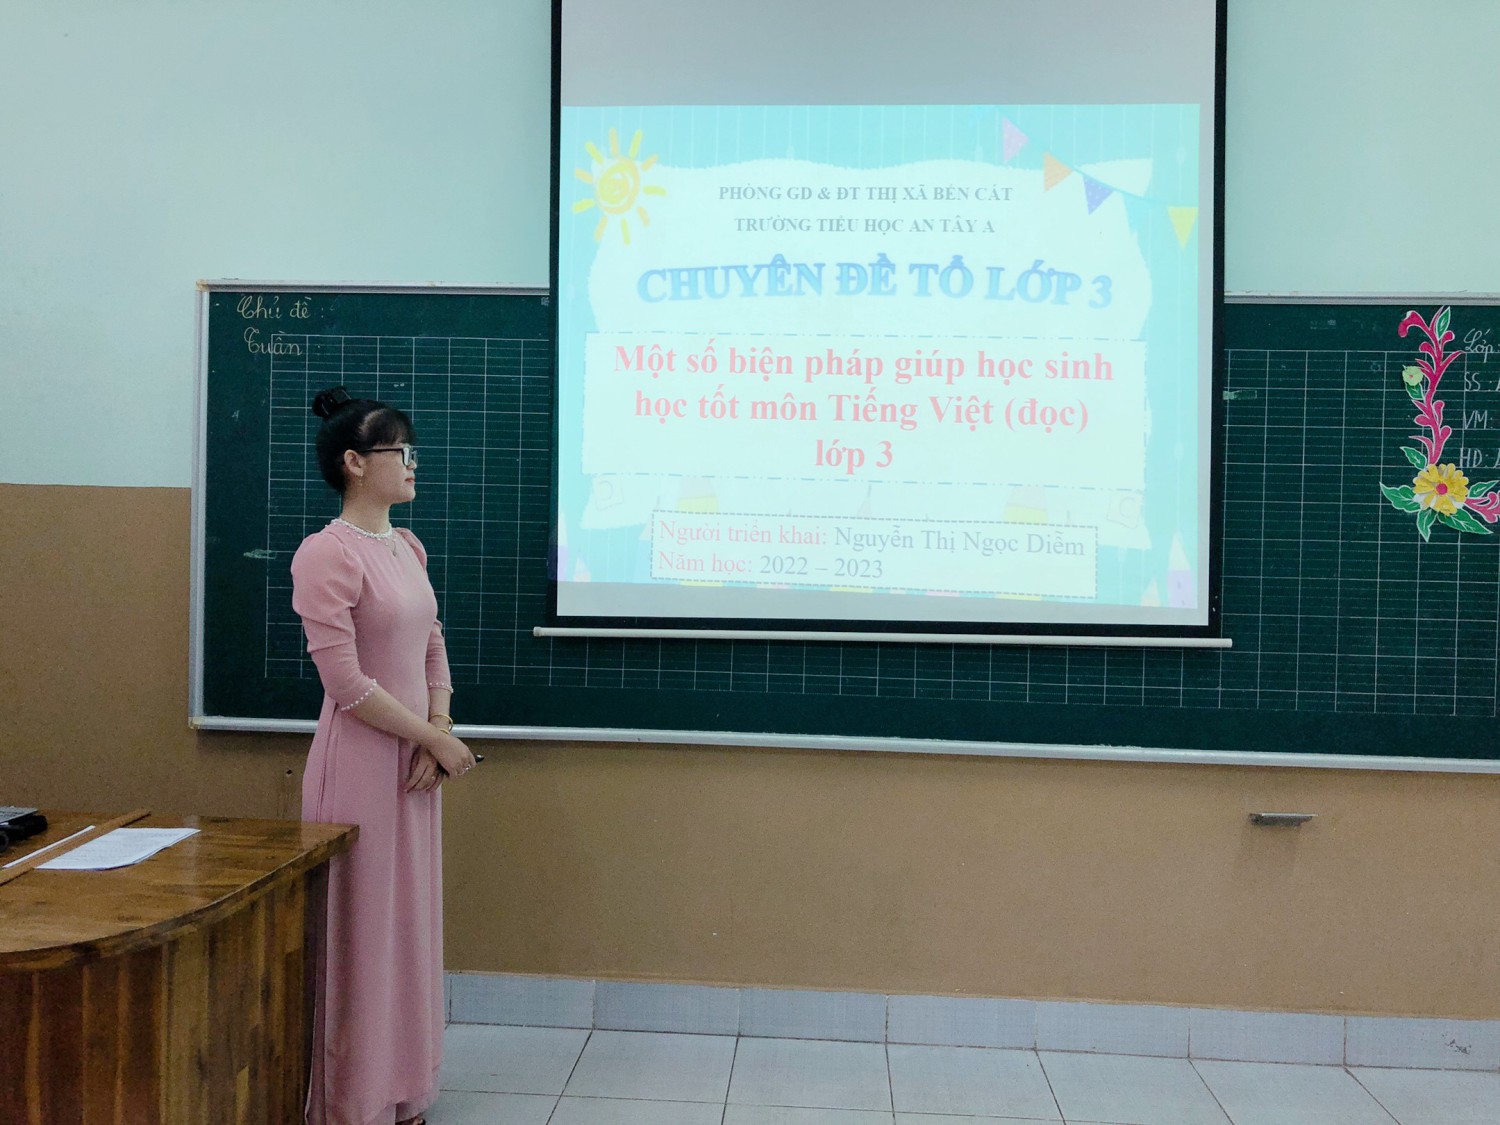 Triển khai chuyên đề “Một số biện pháp giúp học sinh học tốt môn Tiếng Việt (đọc) lớp 3”